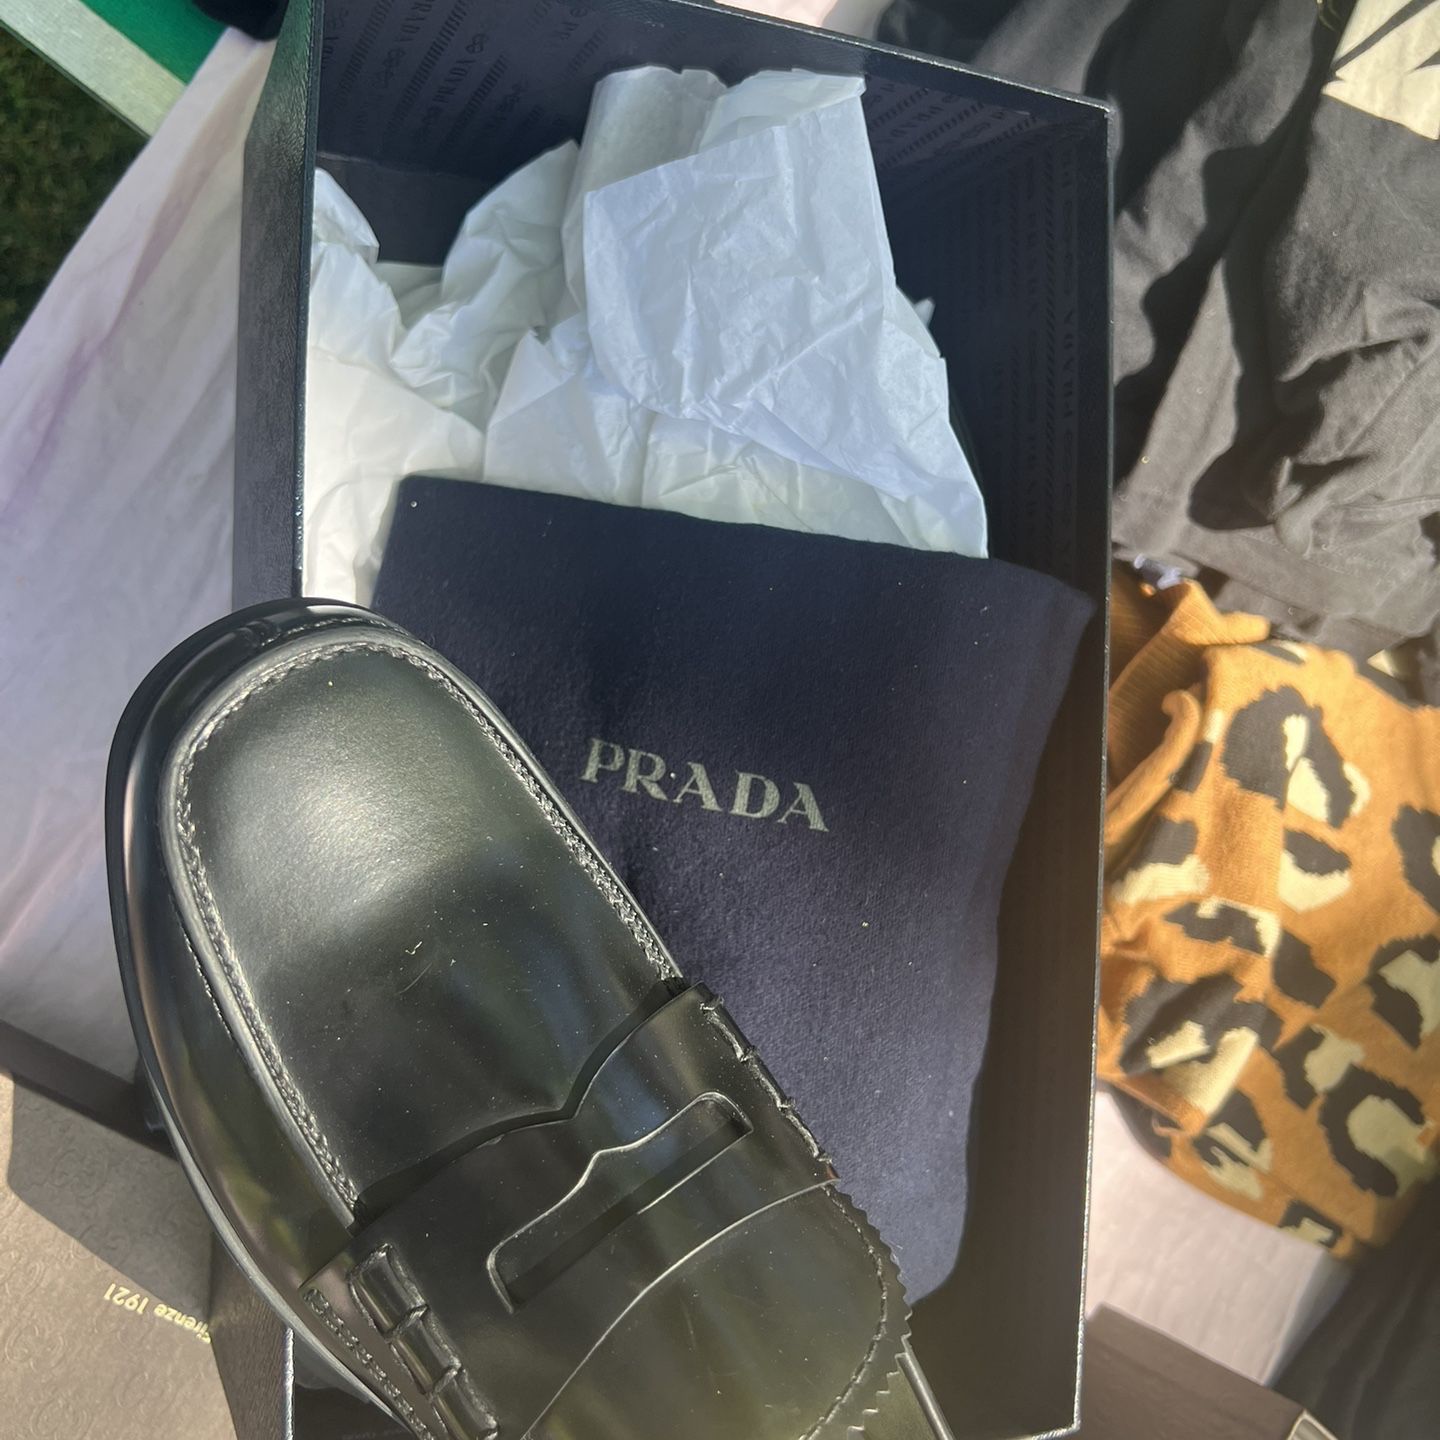 NEW Italian PRADA loafers $350 UK 7 M (10+ Women US)